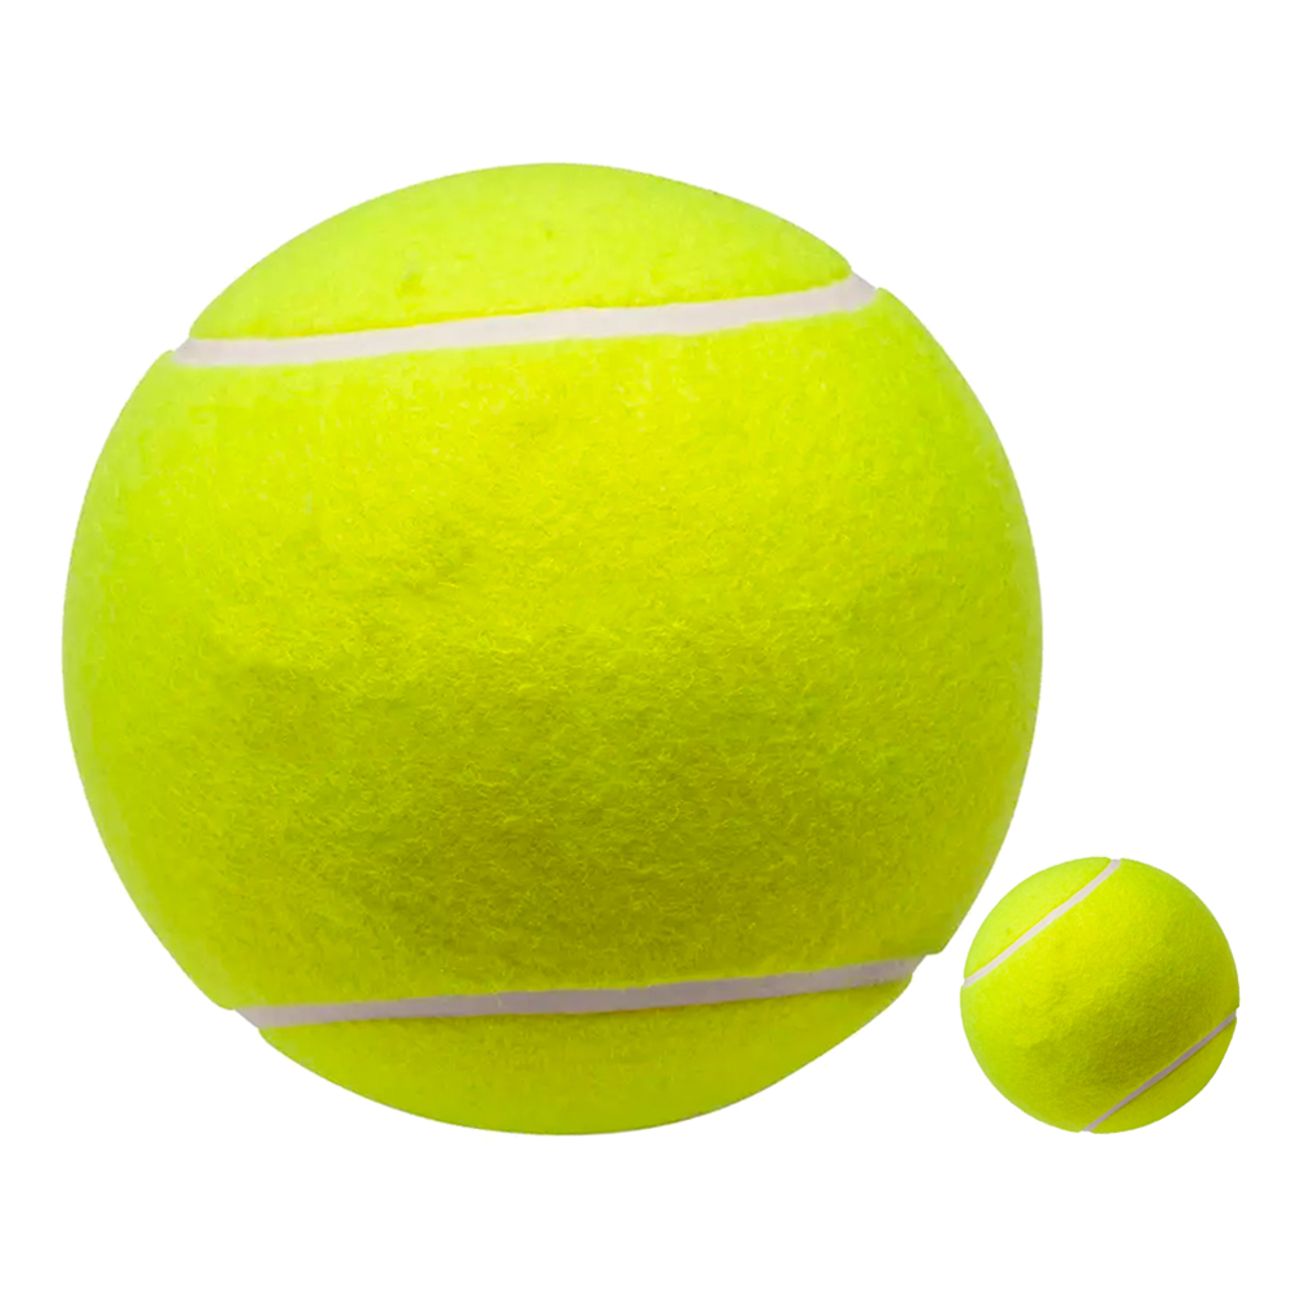 gigantisk-tennisboll-82178-1